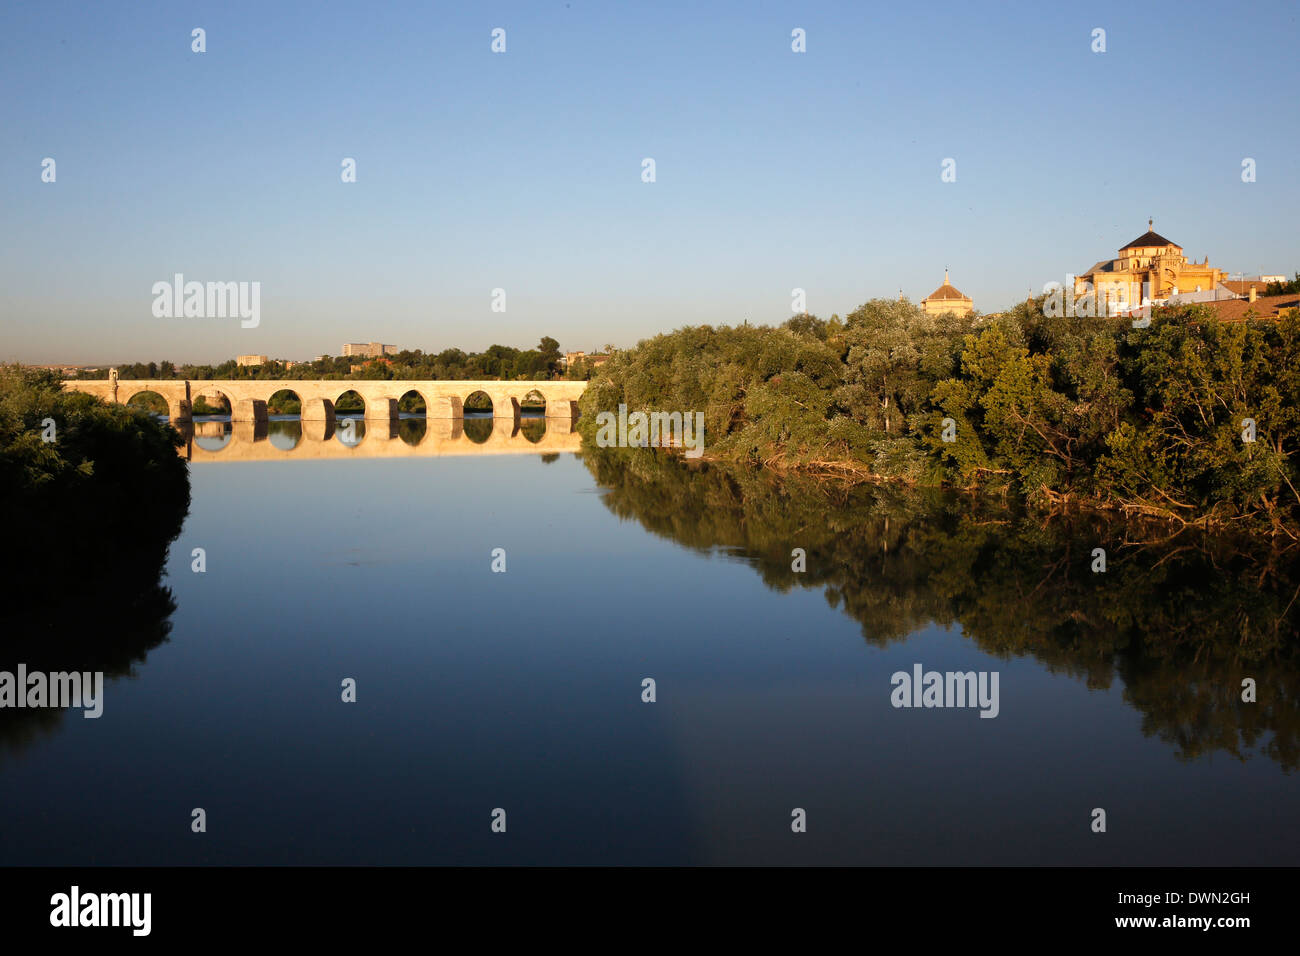 Puente romano sobre el río Guadalquivir, Sitio del Patrimonio Mundial de la UNESCO, Córdoba, Andalucía, España, Europa Foto de stock